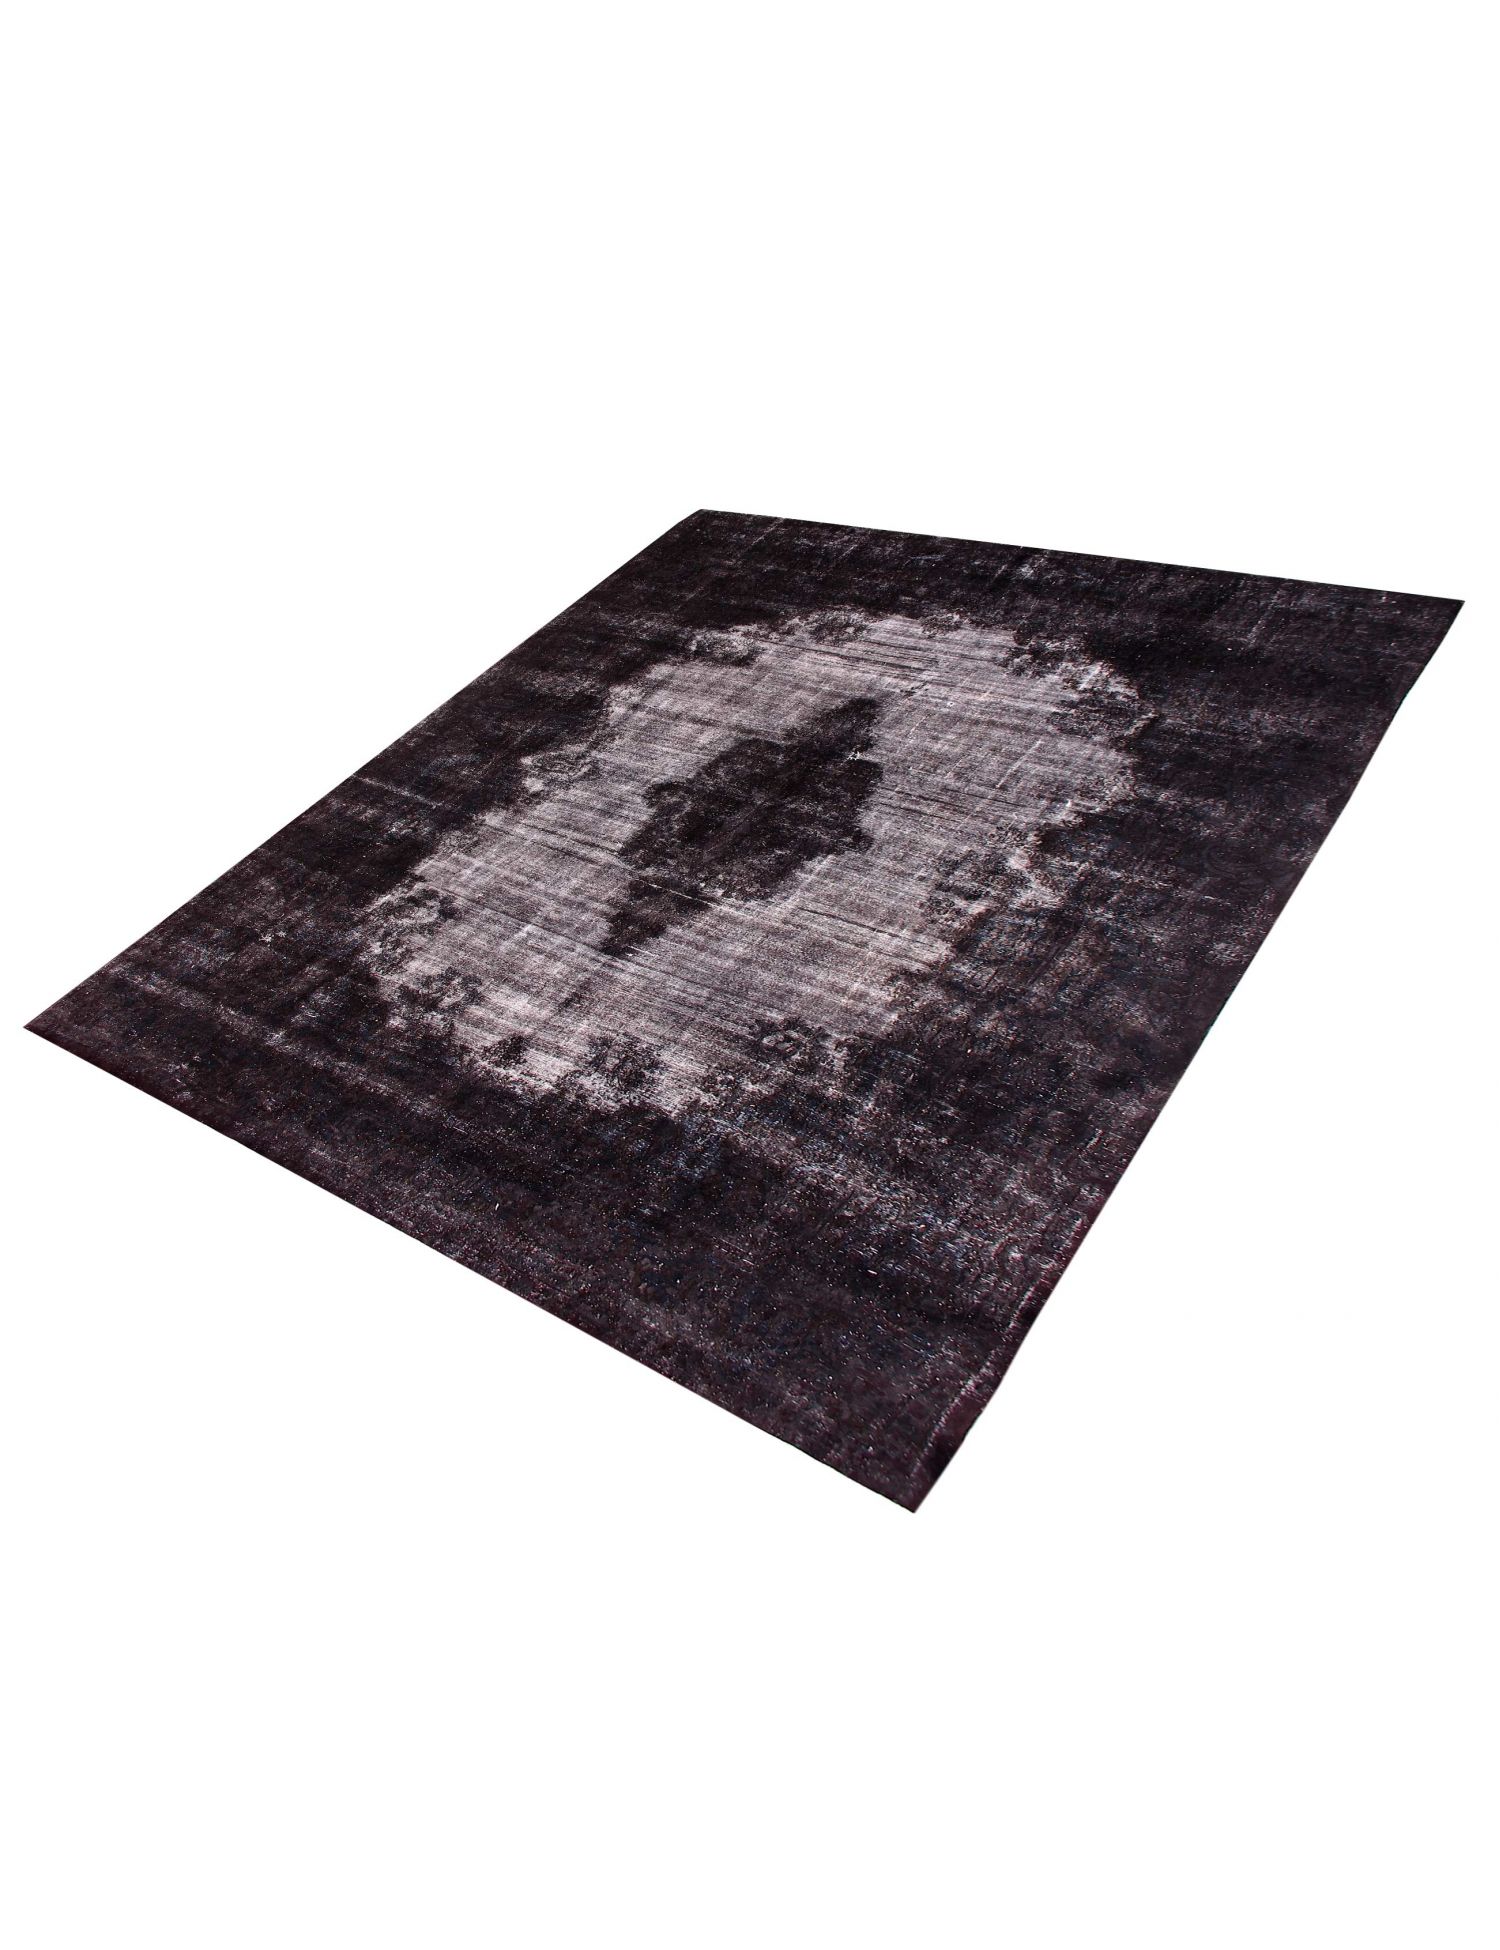 Persian Vintage Carpet  black <br/>434 x 298 cm